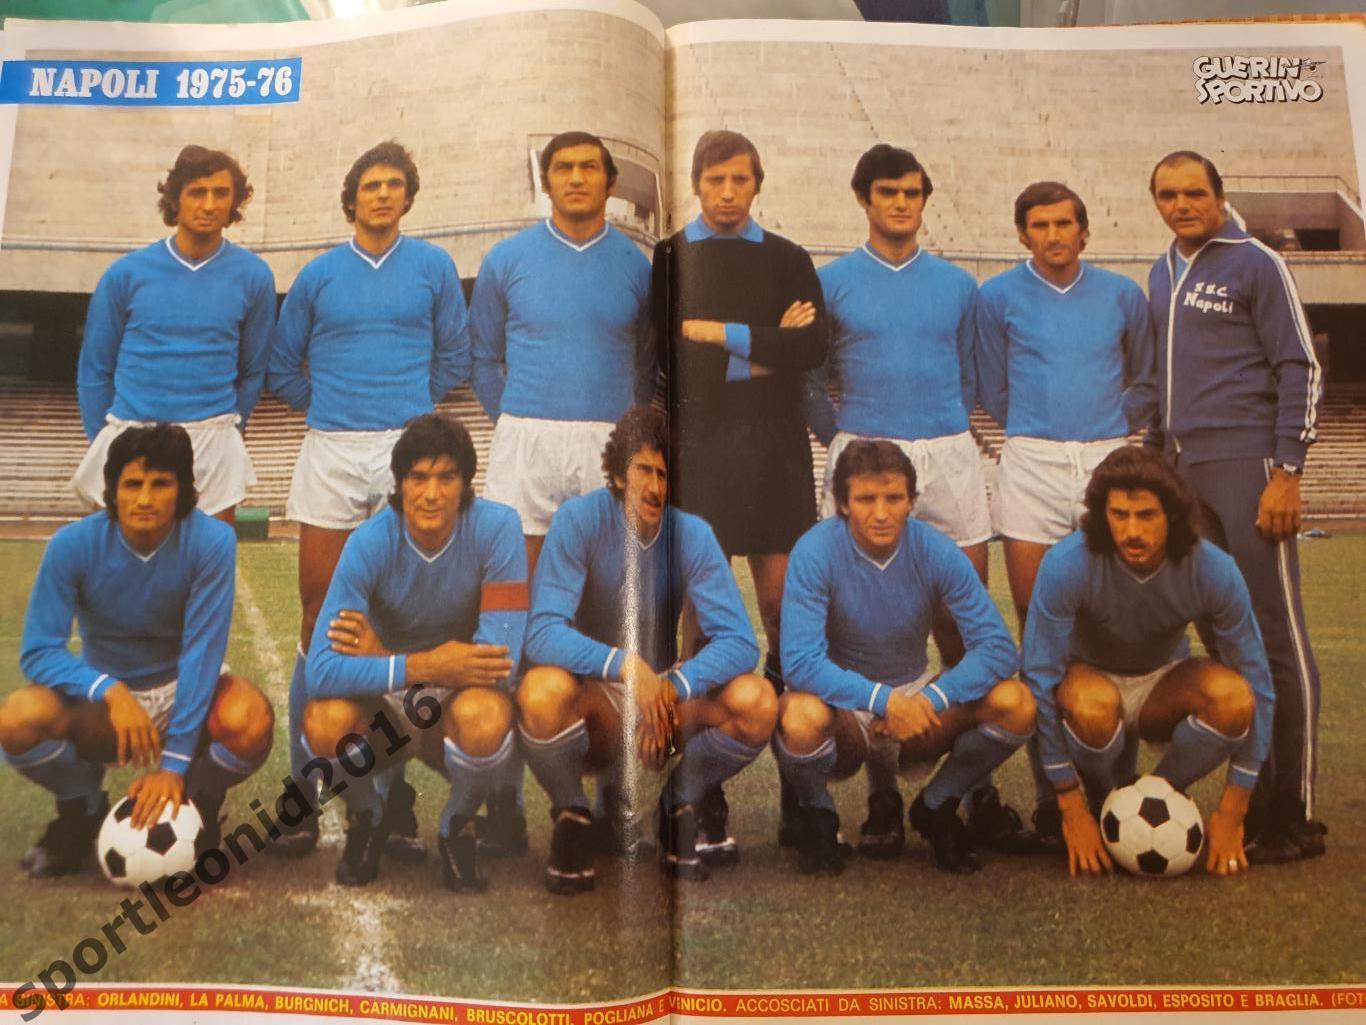 Guerin Sportivo-35/1975